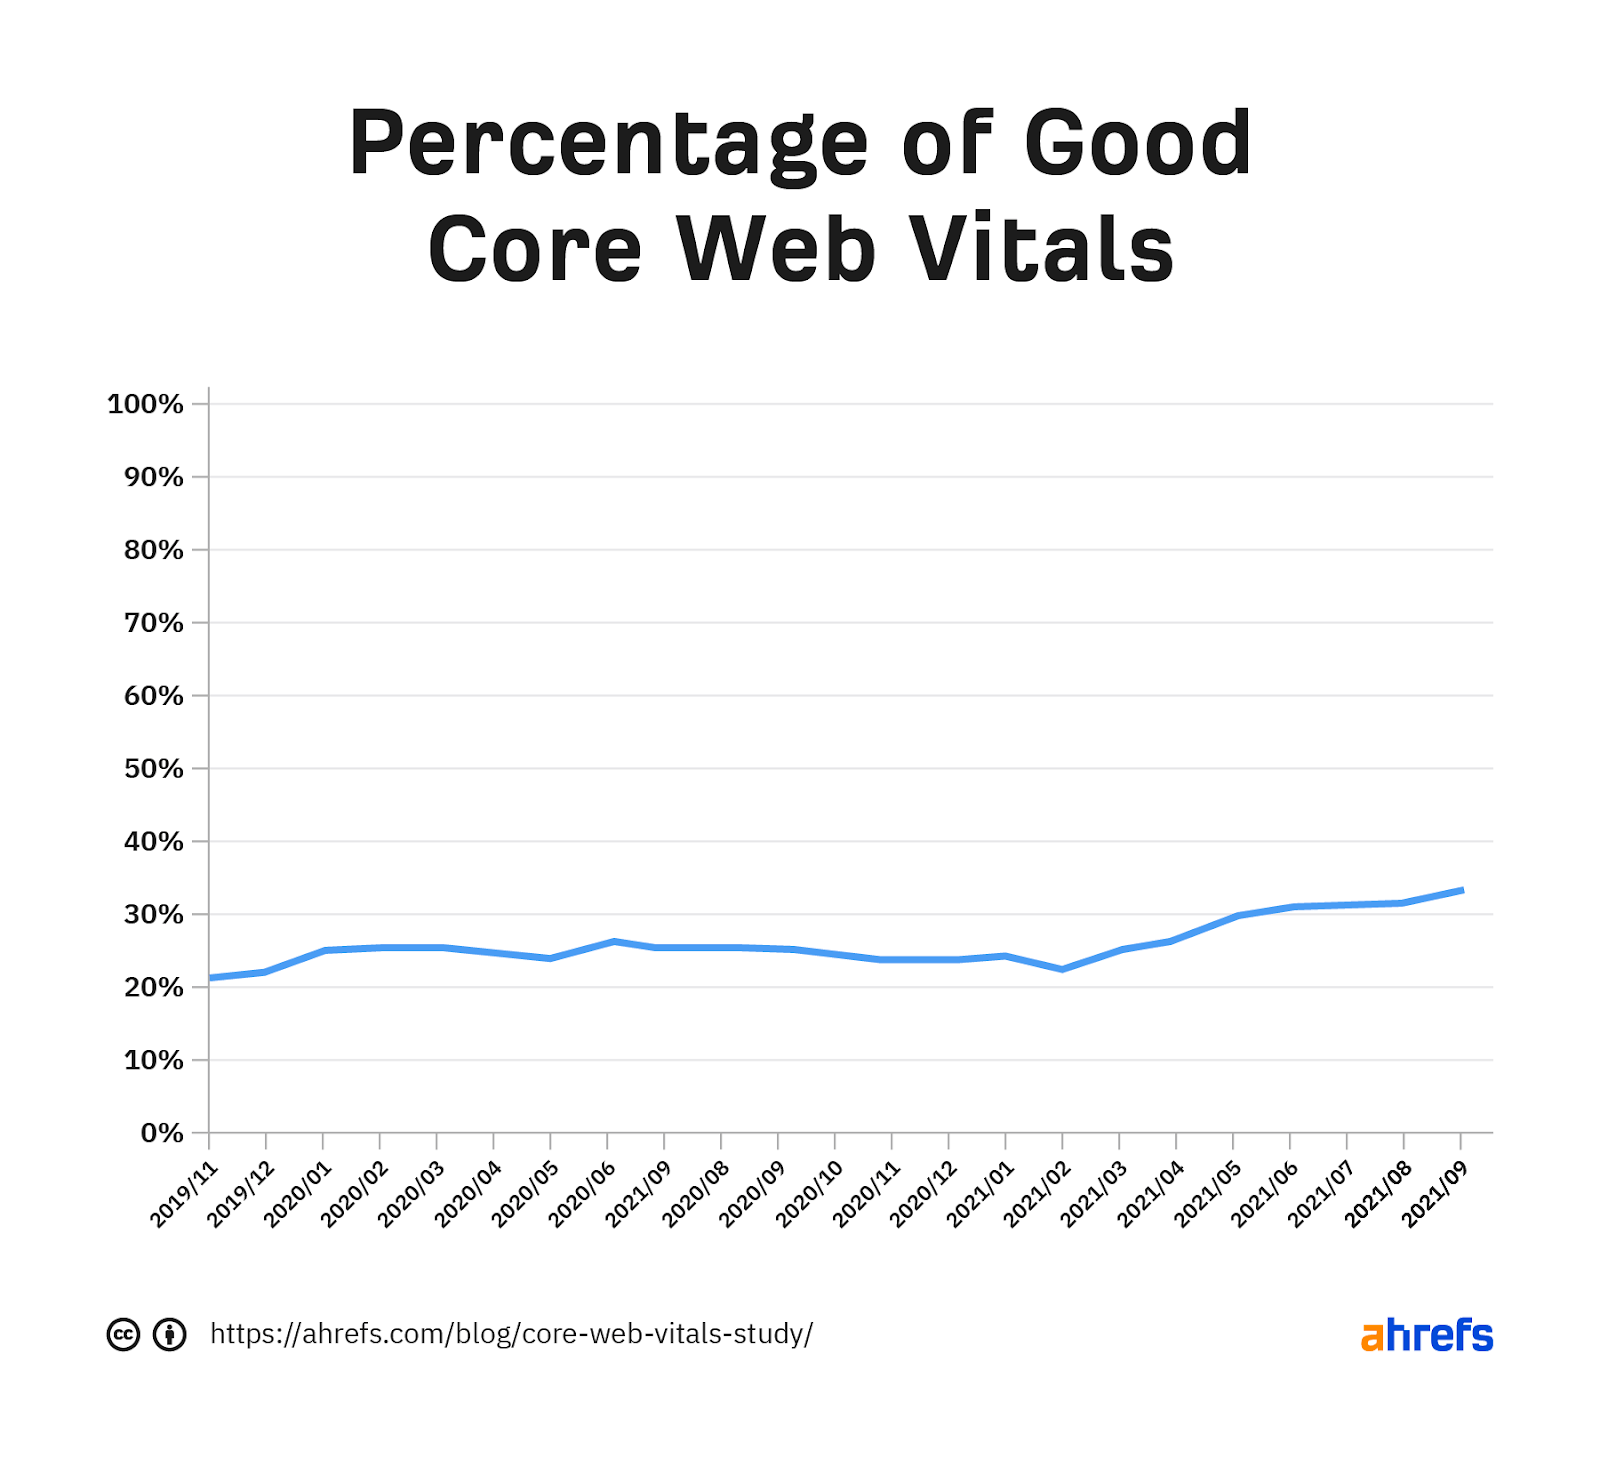 نموداری که درصد Core Web Vitals خوب را در طول زمان نشان می دهد